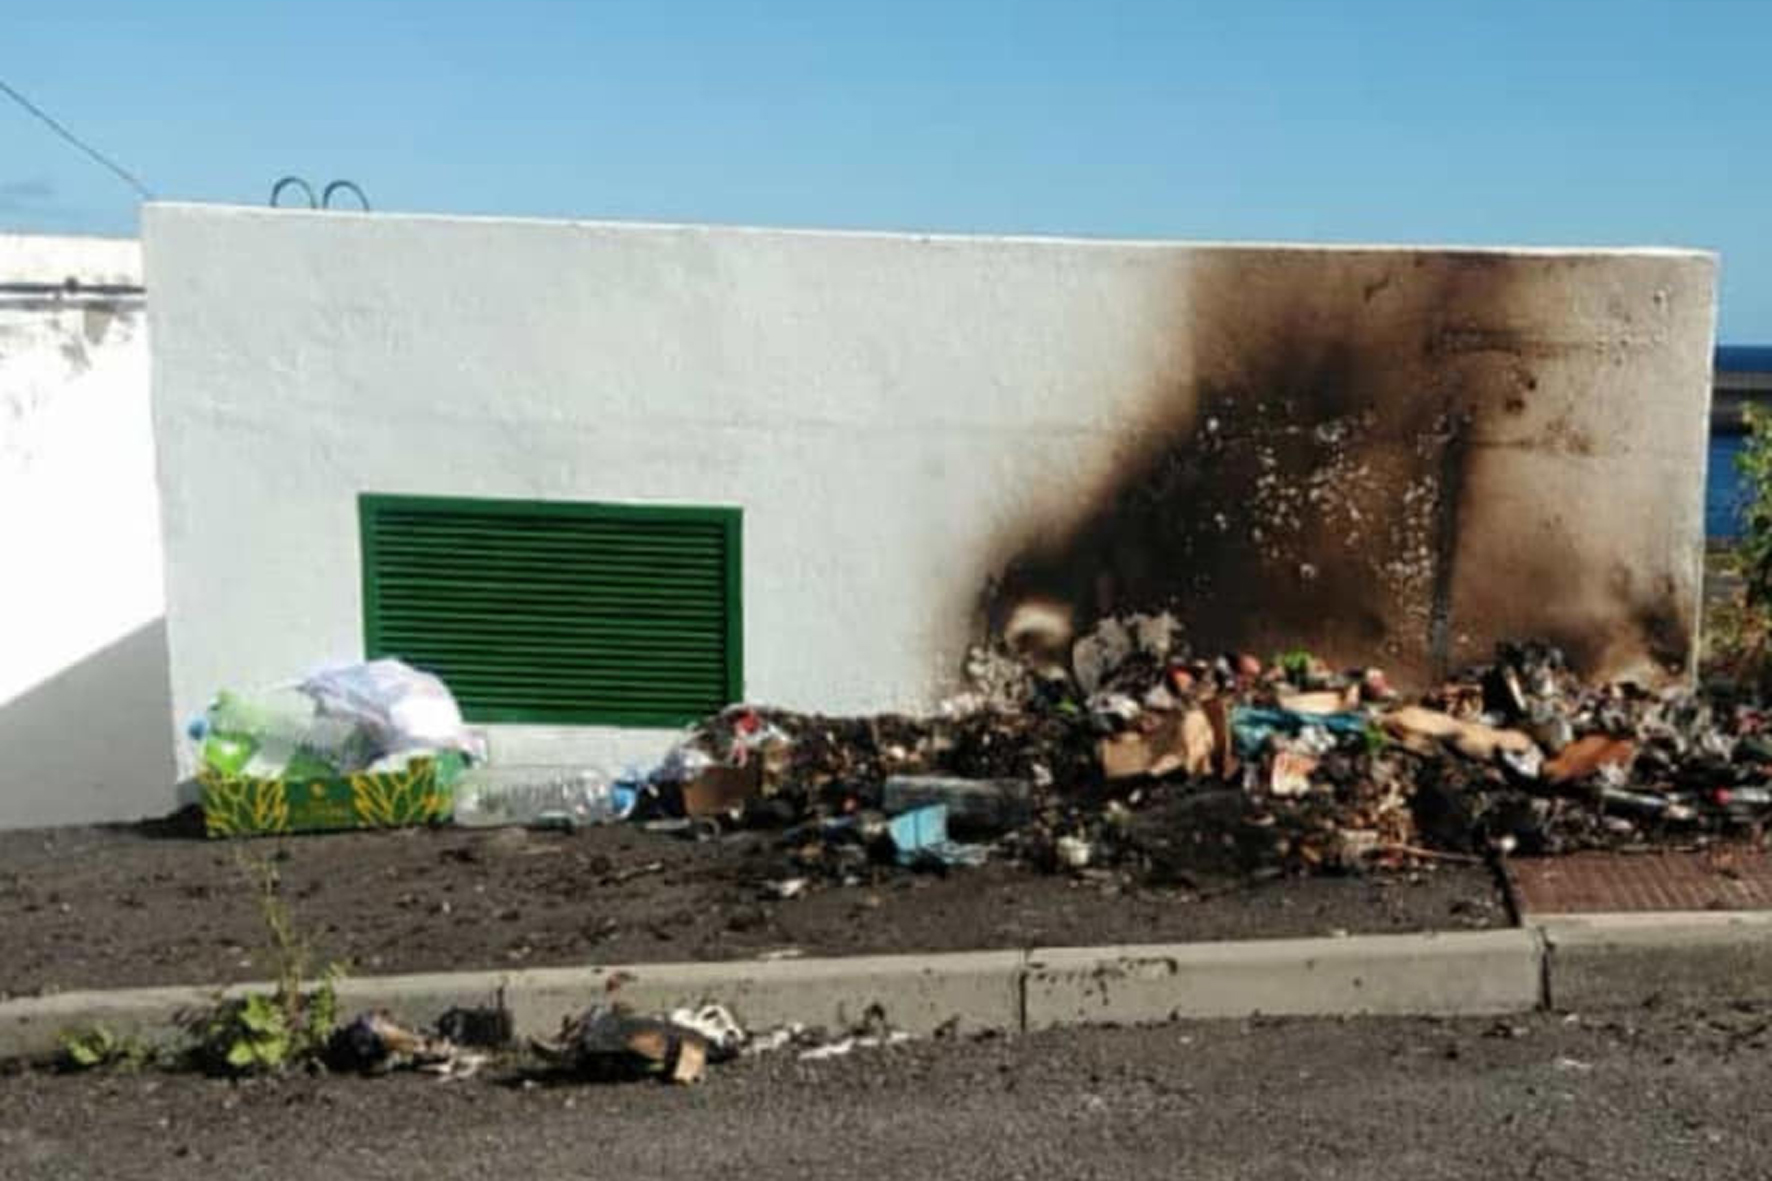 El ayuntamiento de Valverde pide a los vecinos utilicen los puntos de recogida de residuos establecidos para ello